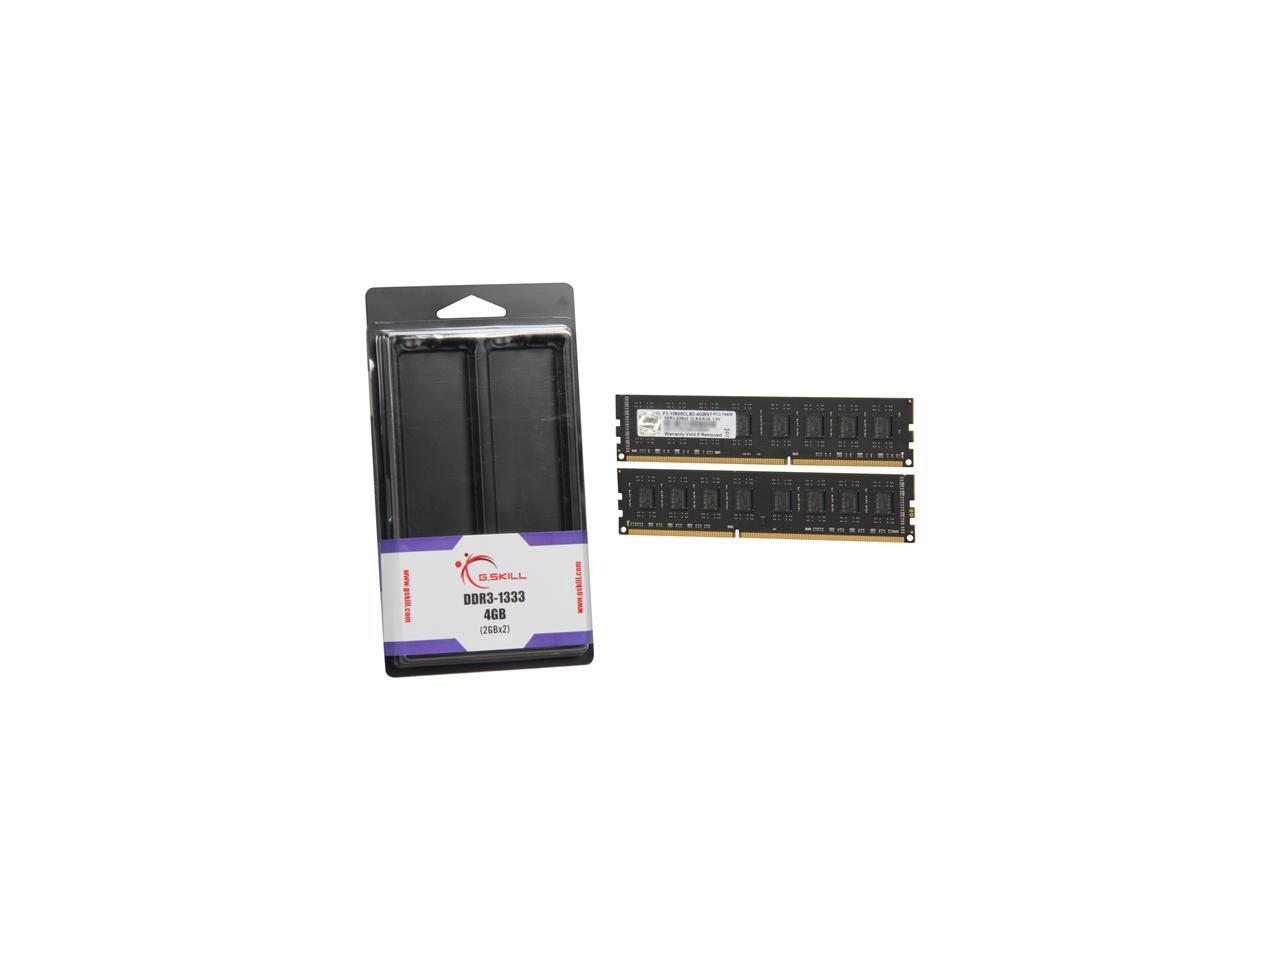 G.SKILL 4GB (2 x 2GB) 240-Pin DDR3 SDRAM DDR3 1333 (PC3 10600) Dual Channel Kit Desktop Memory Model F3-10600CL9D-4GBNT